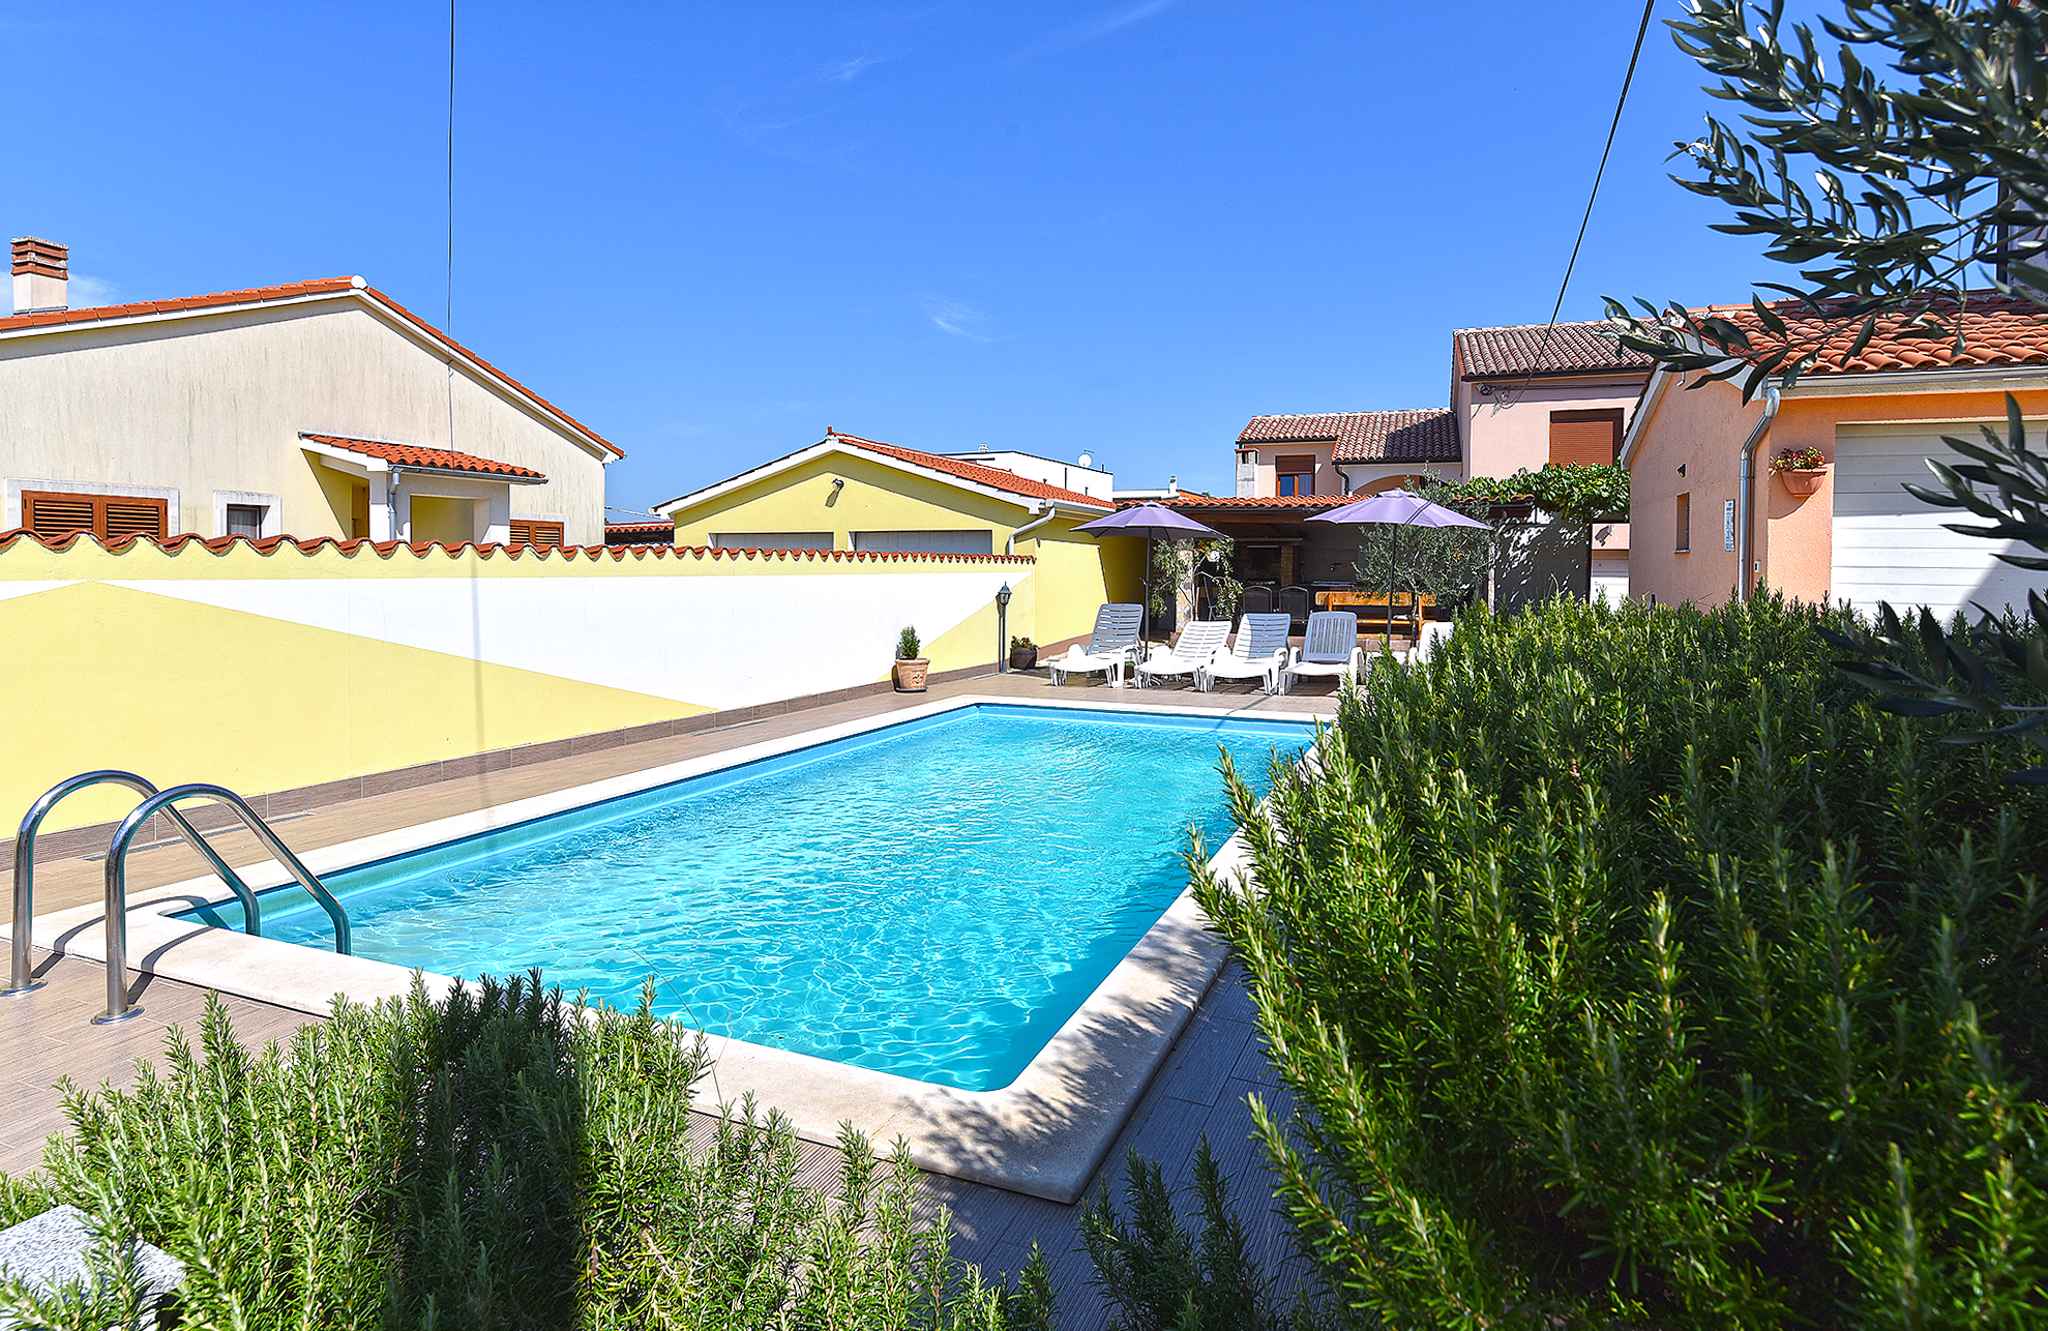 Villa mit Swimmingpool und Spielraum im Garten Ferienhaus in Europa